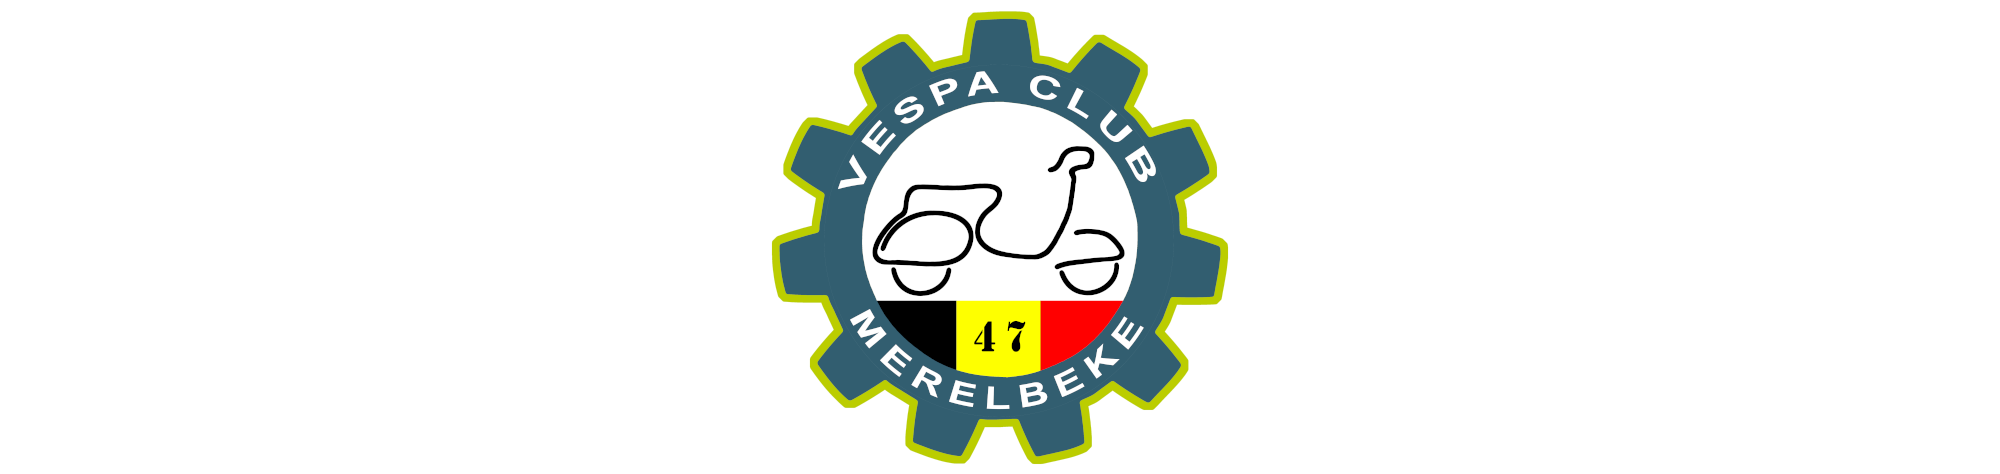 Logo Vespa Club Merelbeke